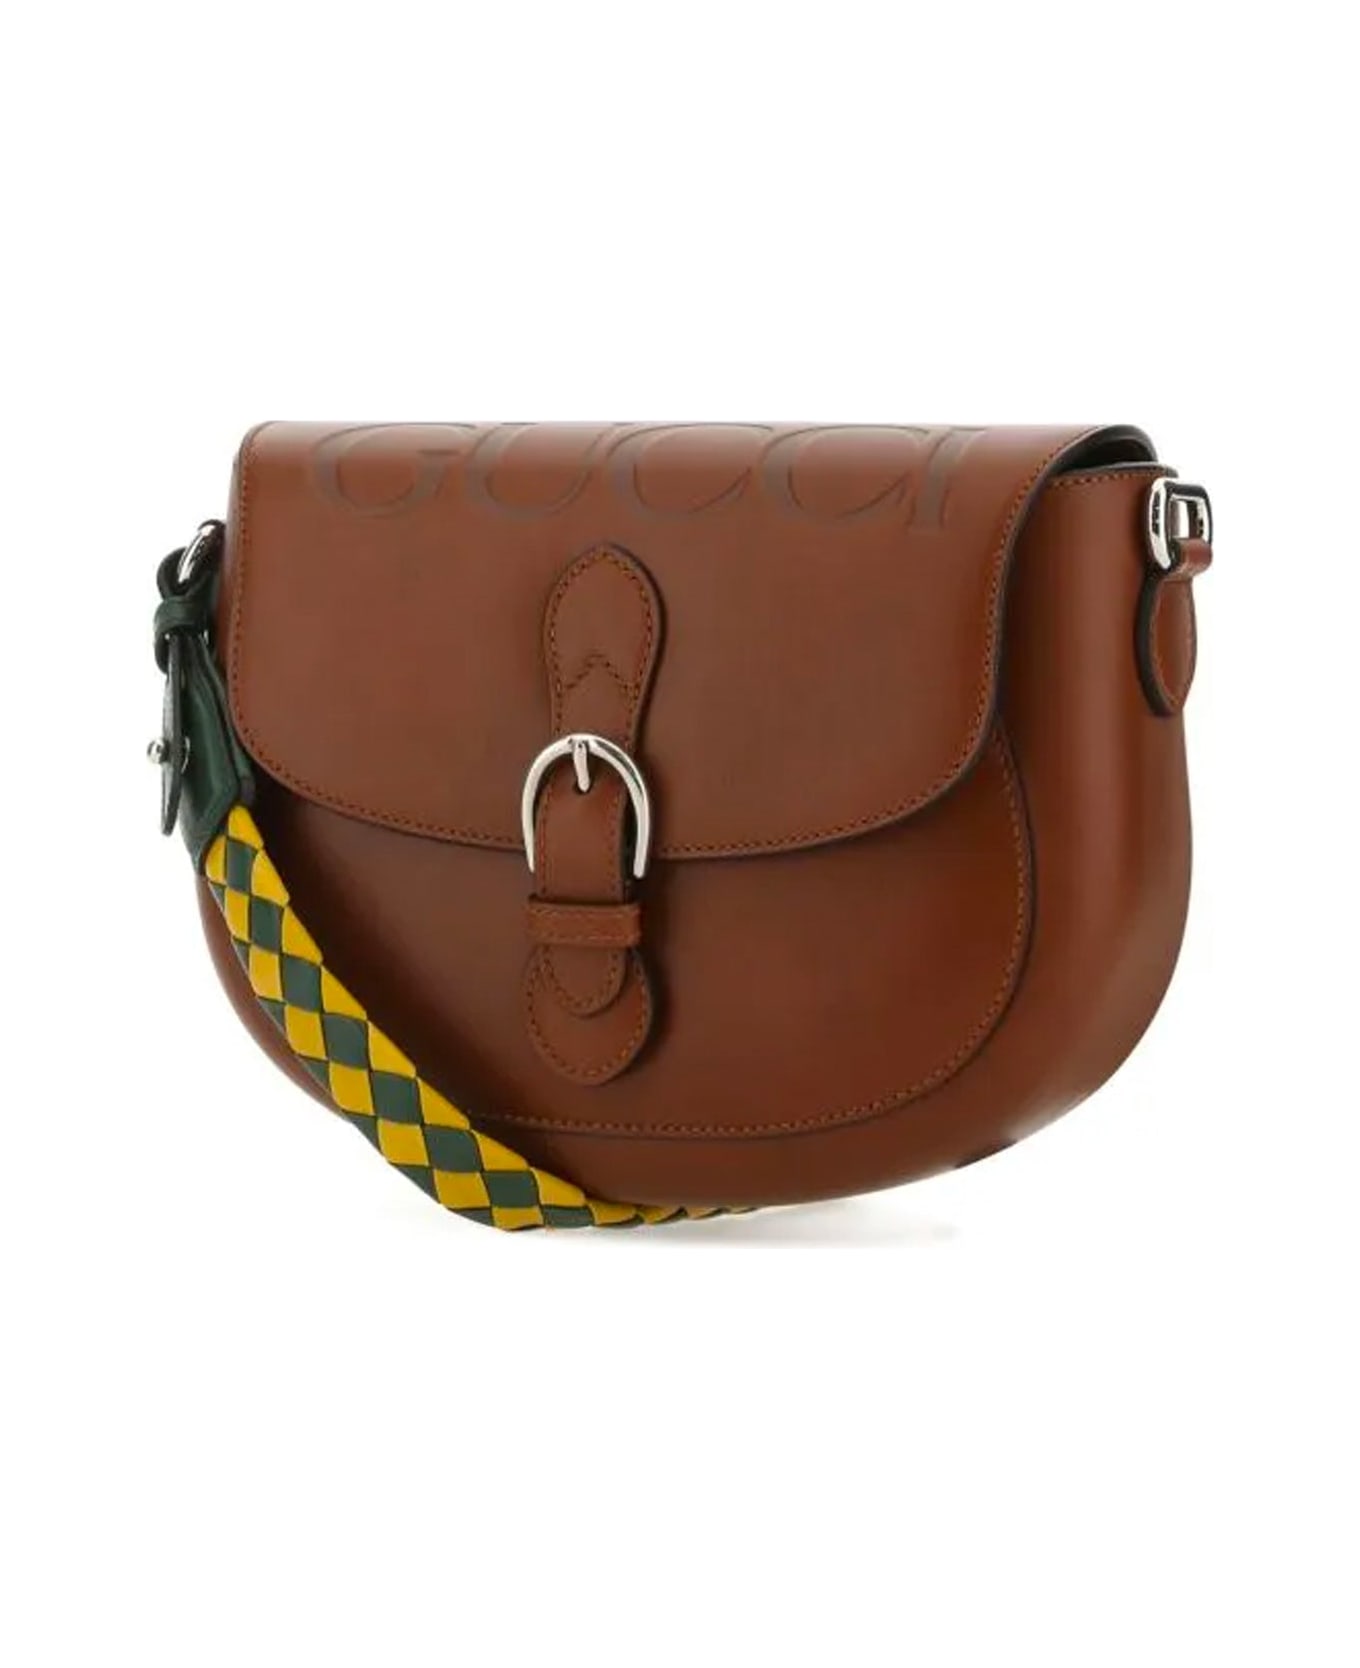 Gucci Leather Shoulder Bag - Brown